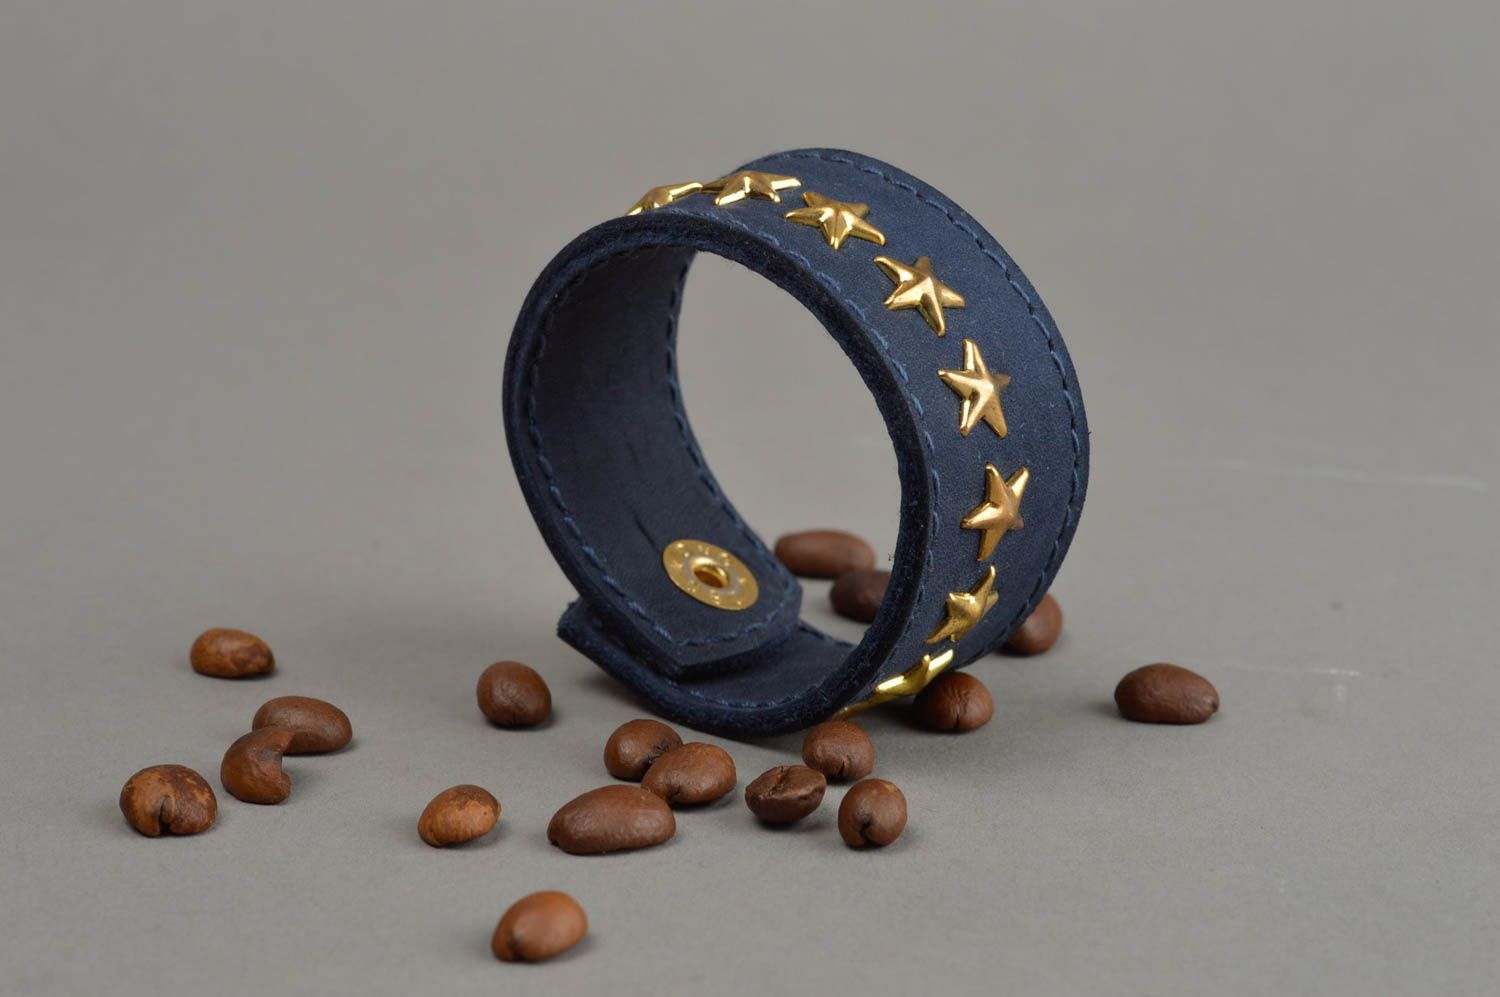 Синий кожаный браслет со звездами хенд мейд оригинальный широкий авторский  фото 1